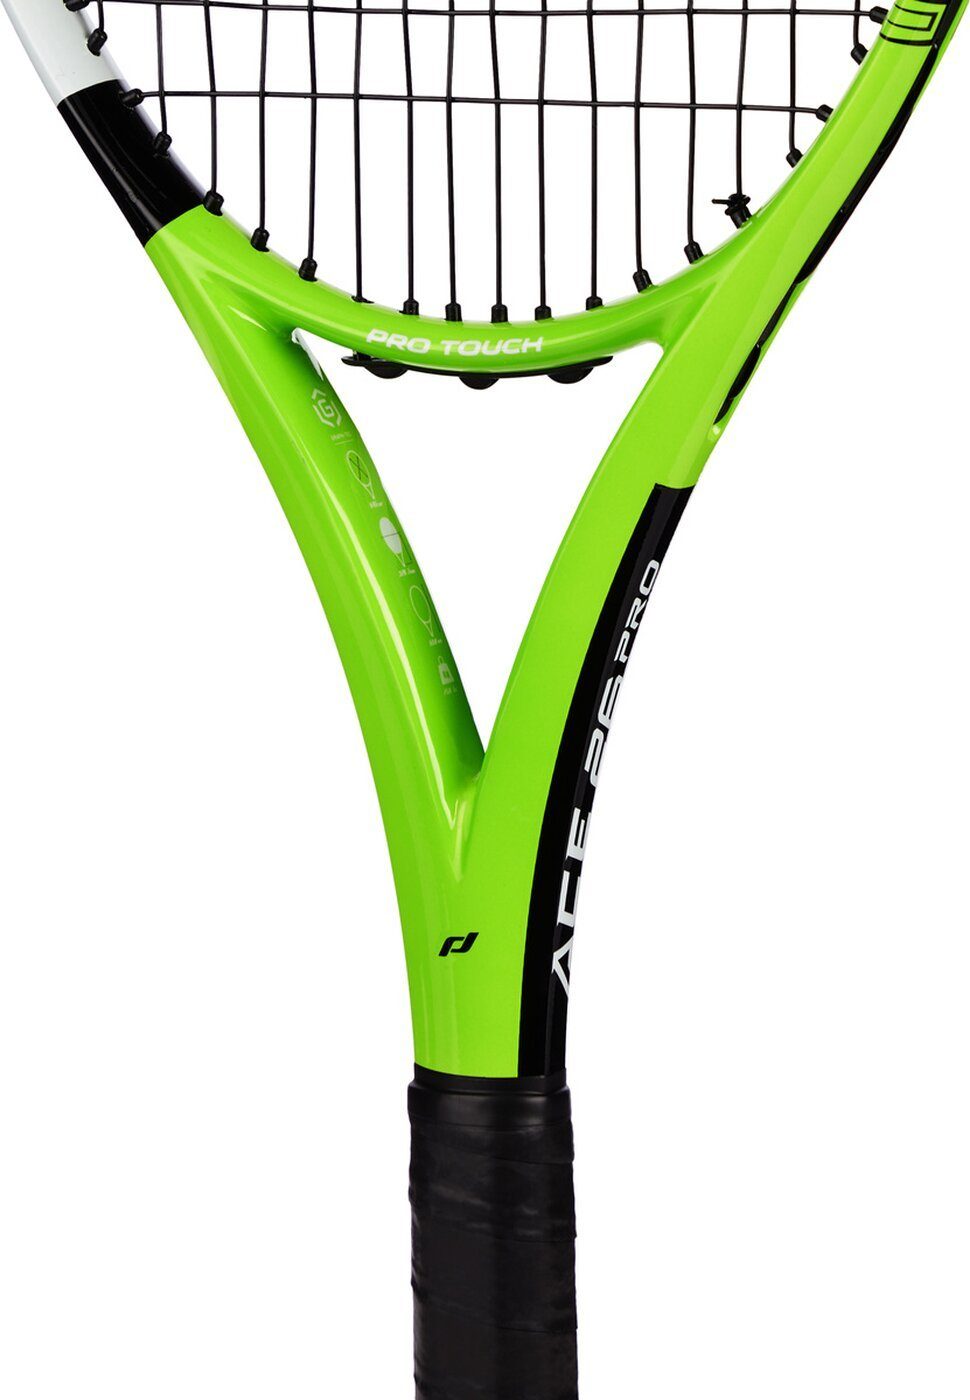 Ace Pro Pro Touch Ki.-Tennis-Schläger Tennisschläger 26